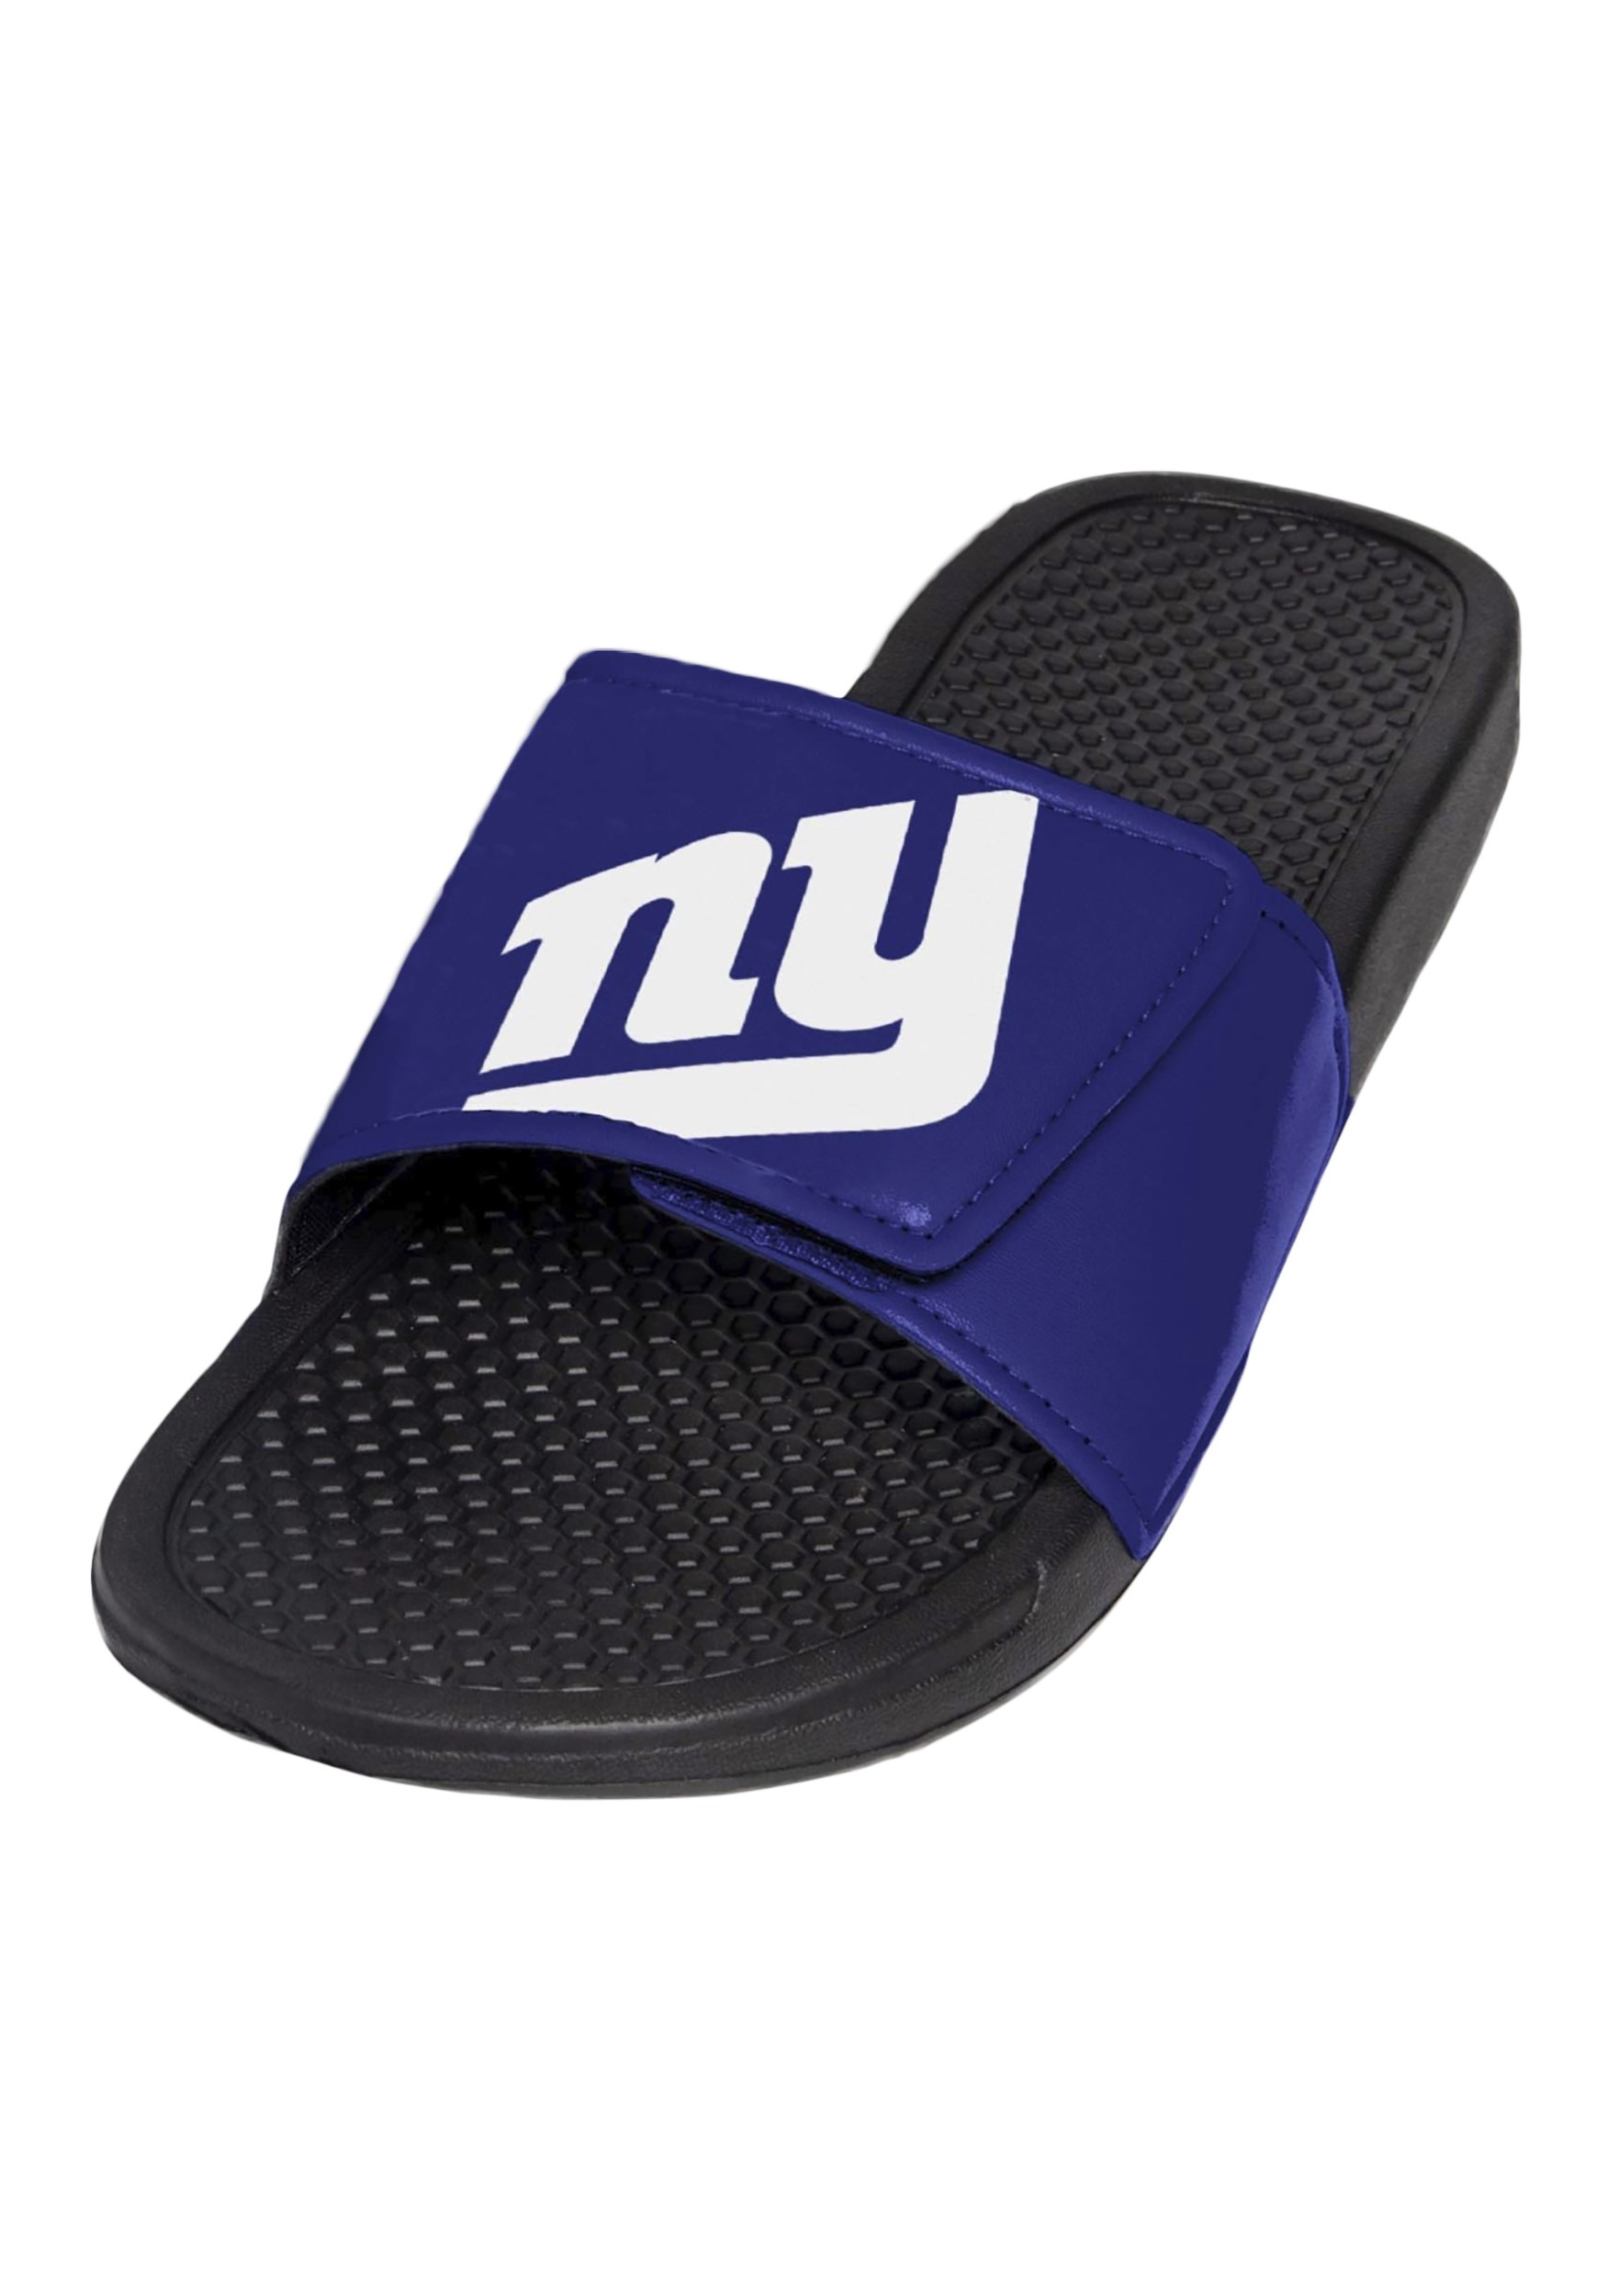 New York Giants Cropped Big Logo Slide Mens Flip Flops